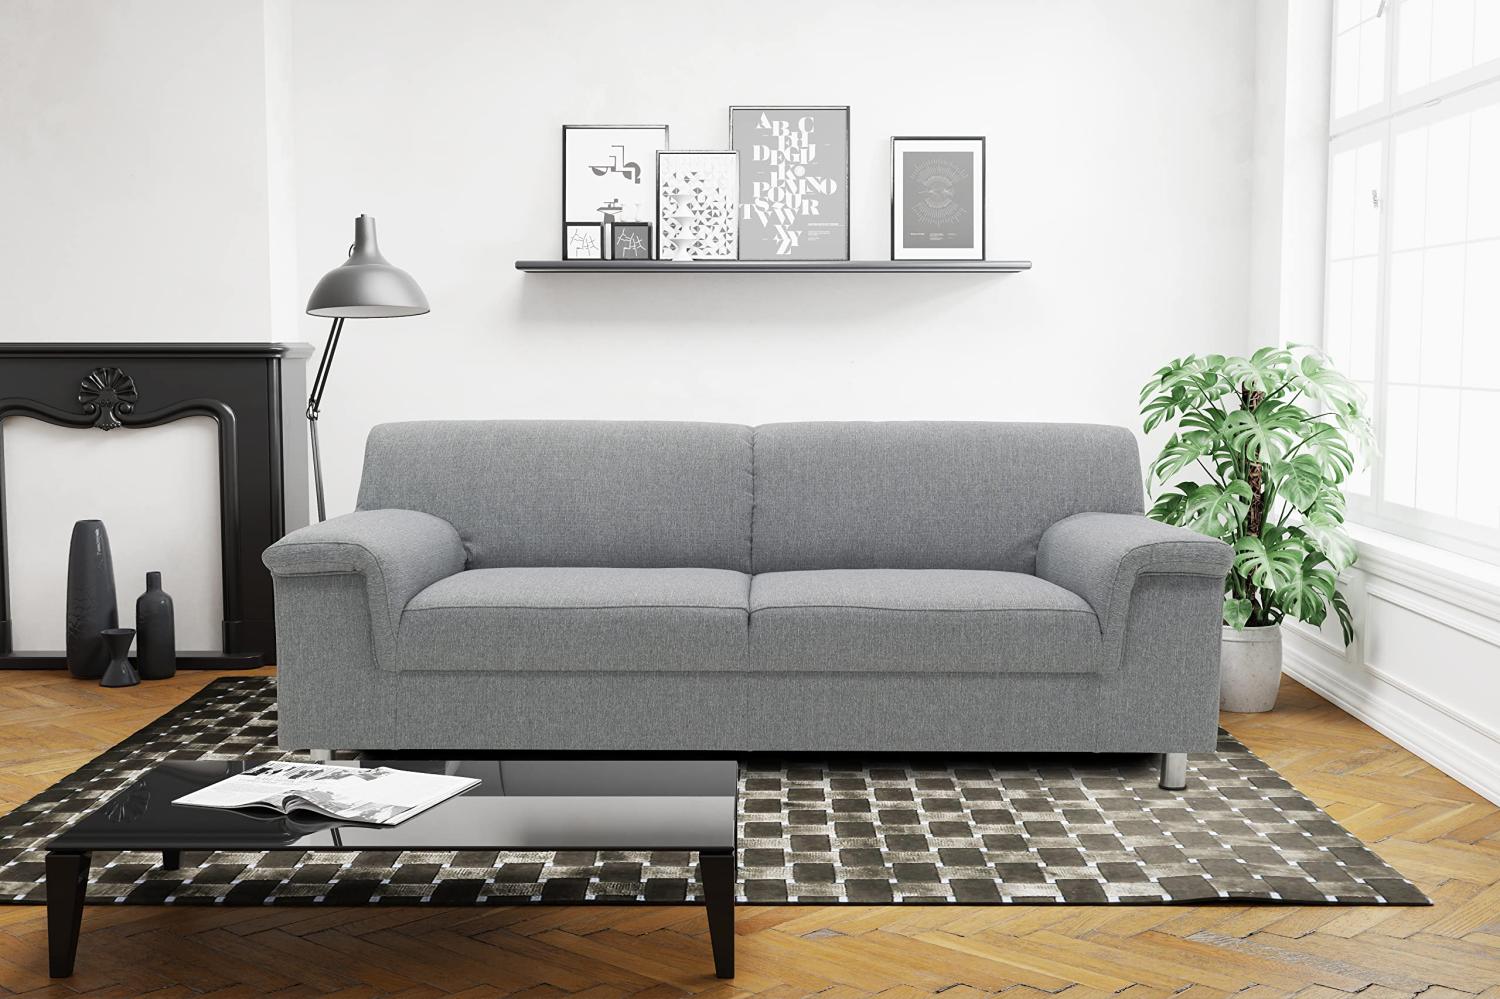 DOMO Collection Jamie Sofa 2er Couch, Garnitur 2 Sitzer, grau, 193 x 80 x 72 cm Bild 1